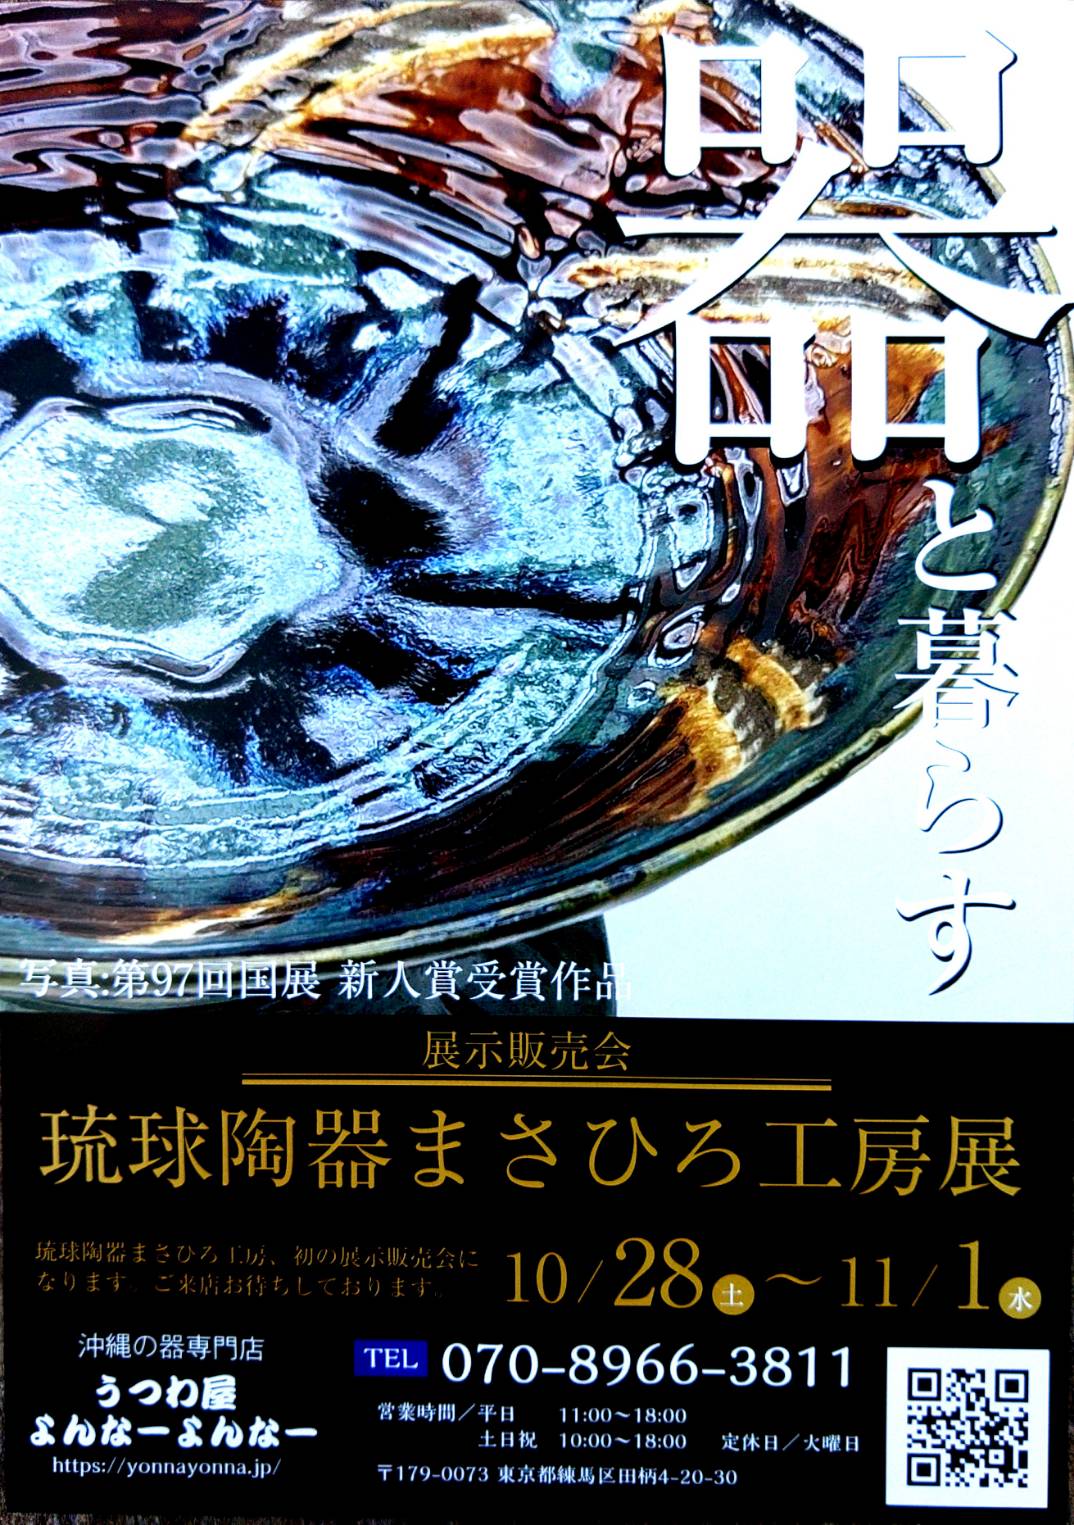 2023/10/28~11/1 初の展示会 『琉球陶器 まさひろ工房展』開催のお知らせ